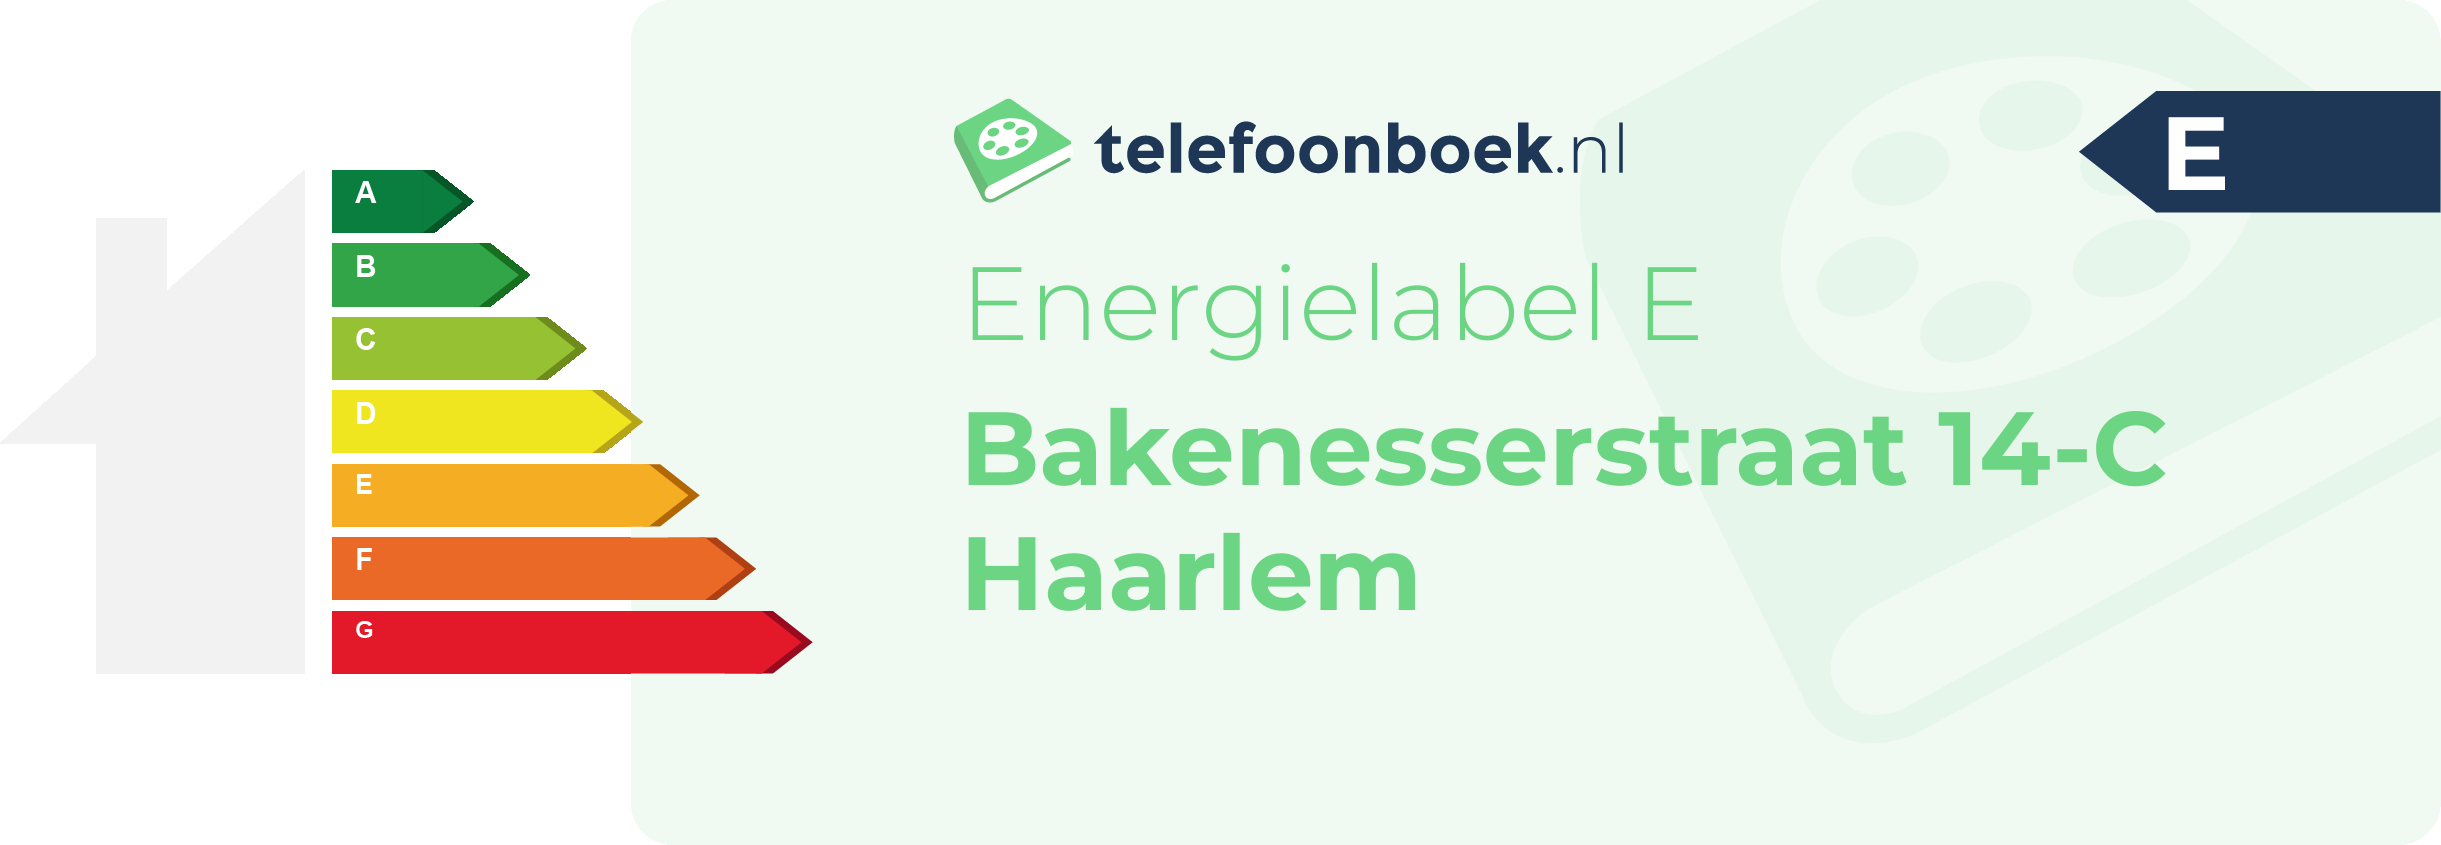 Energielabel Bakenesserstraat 14-C Haarlem